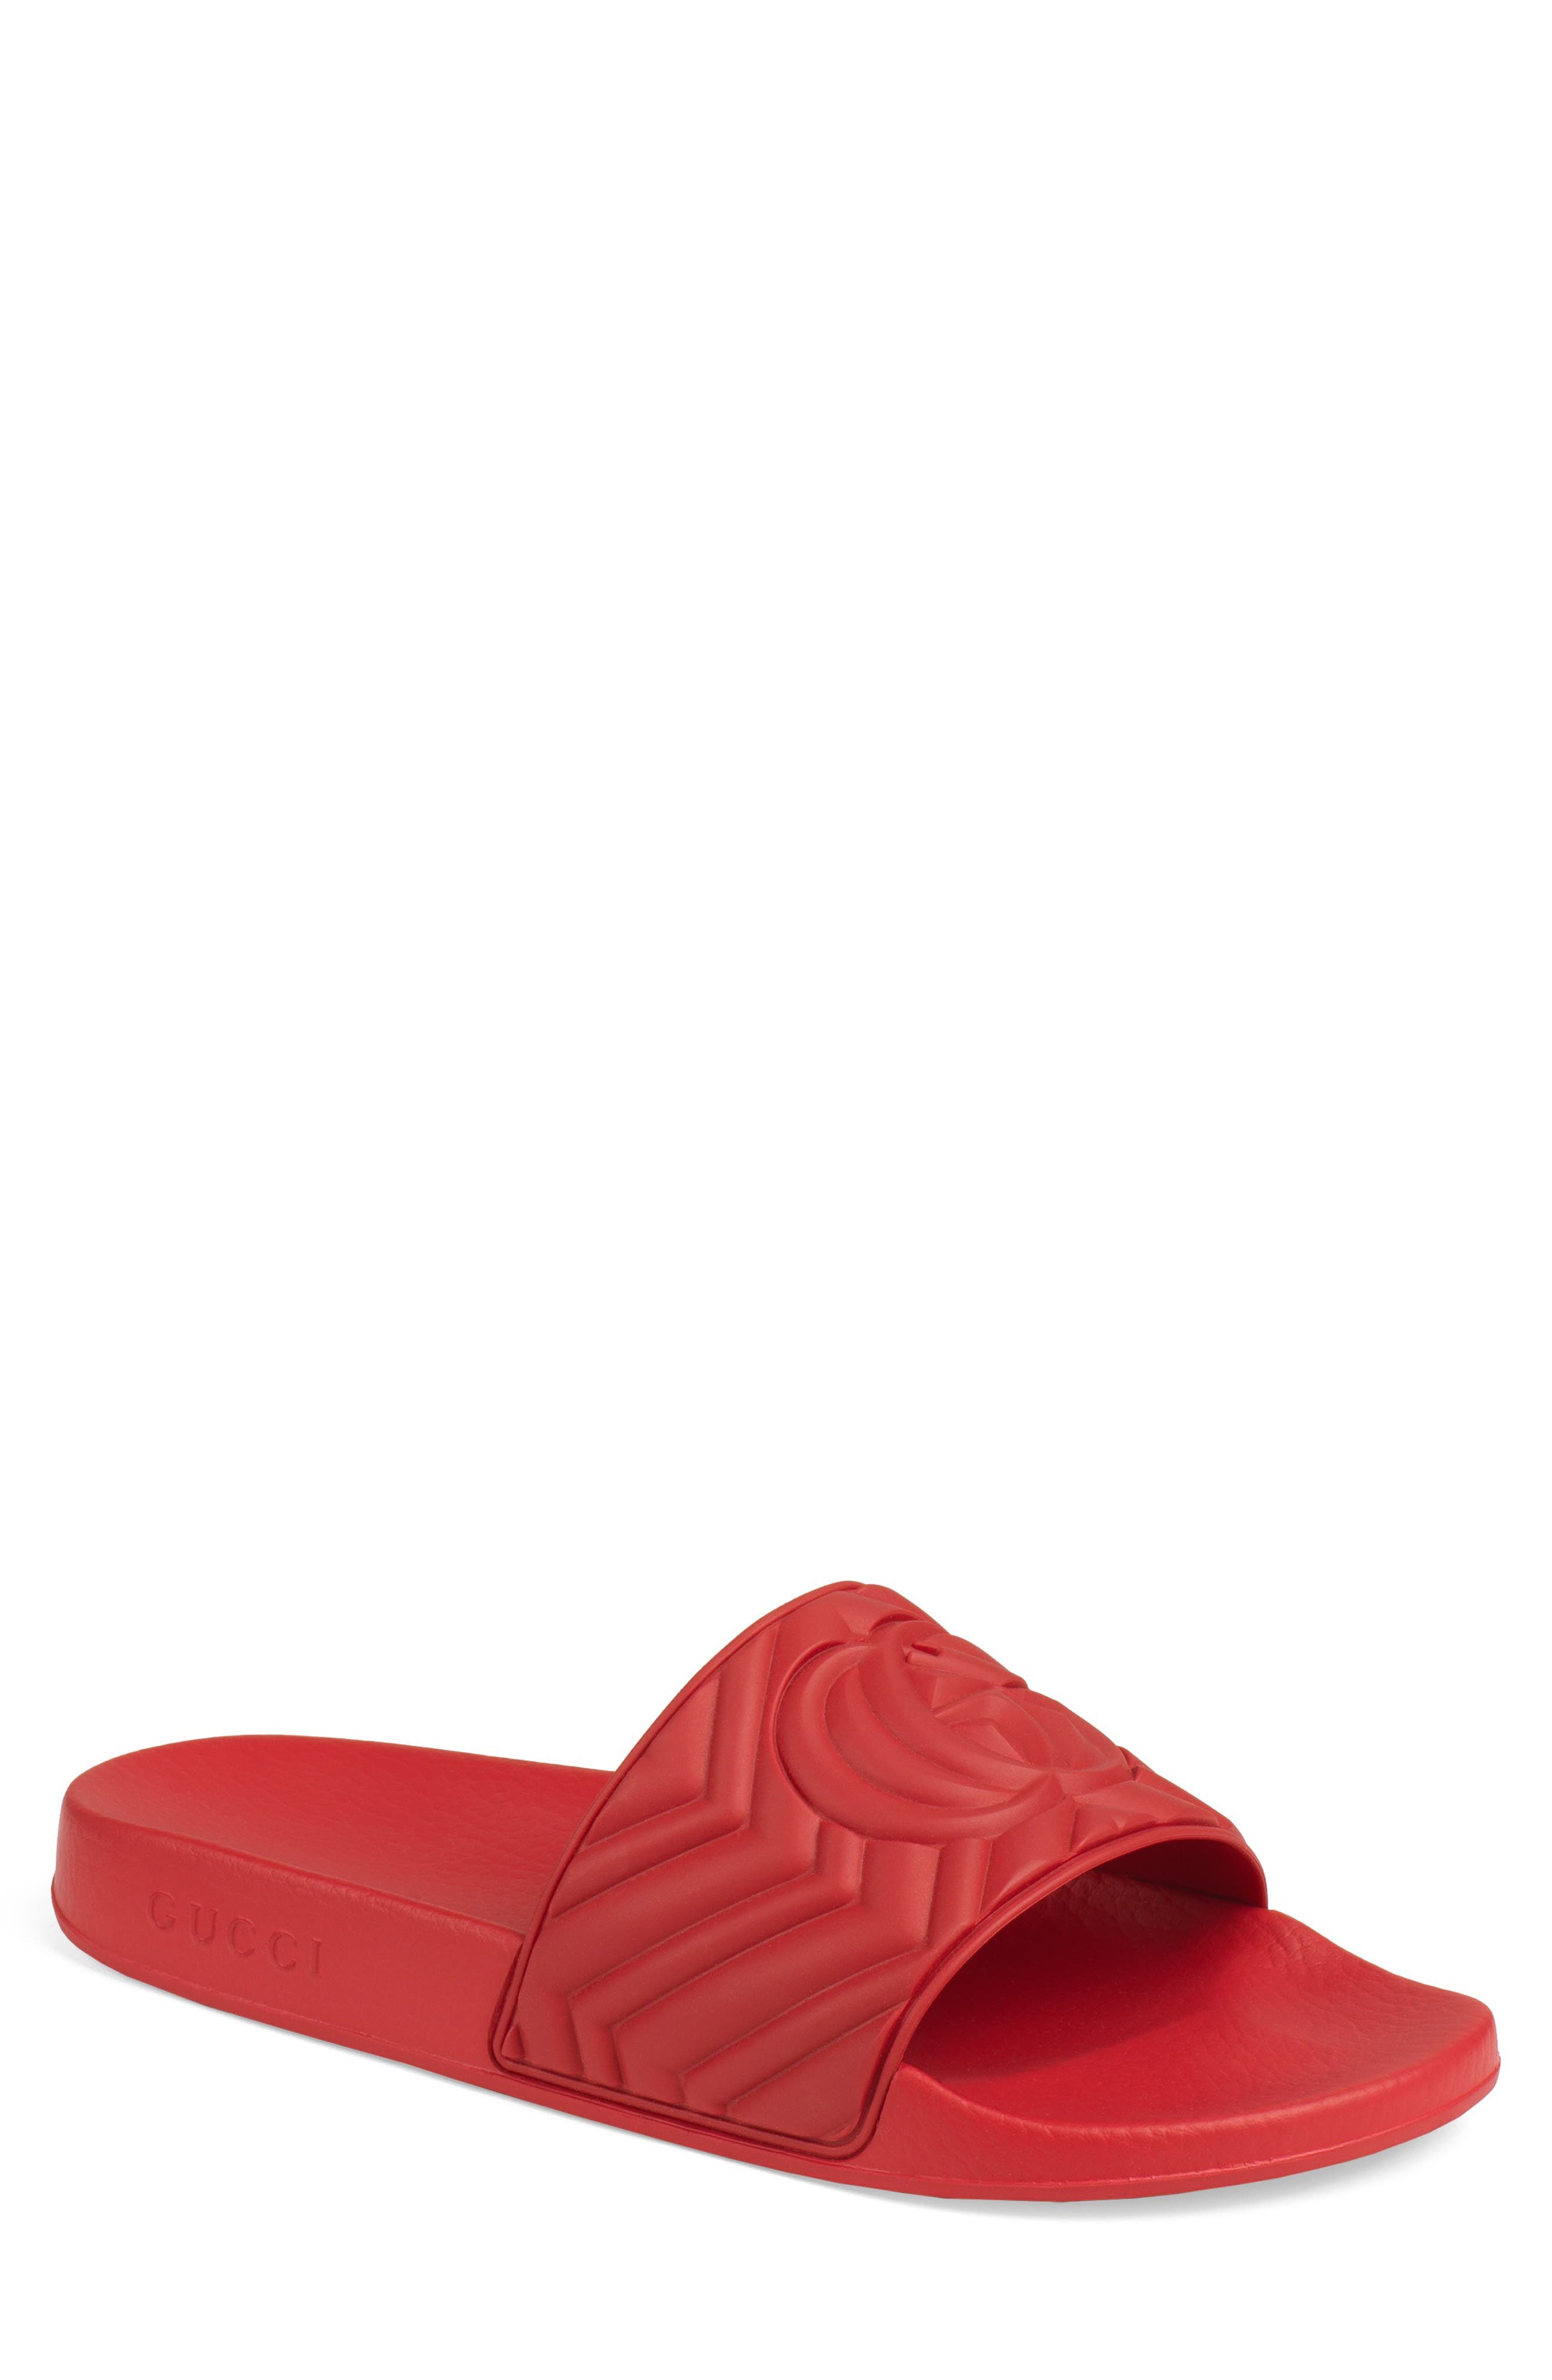 red sandal slides